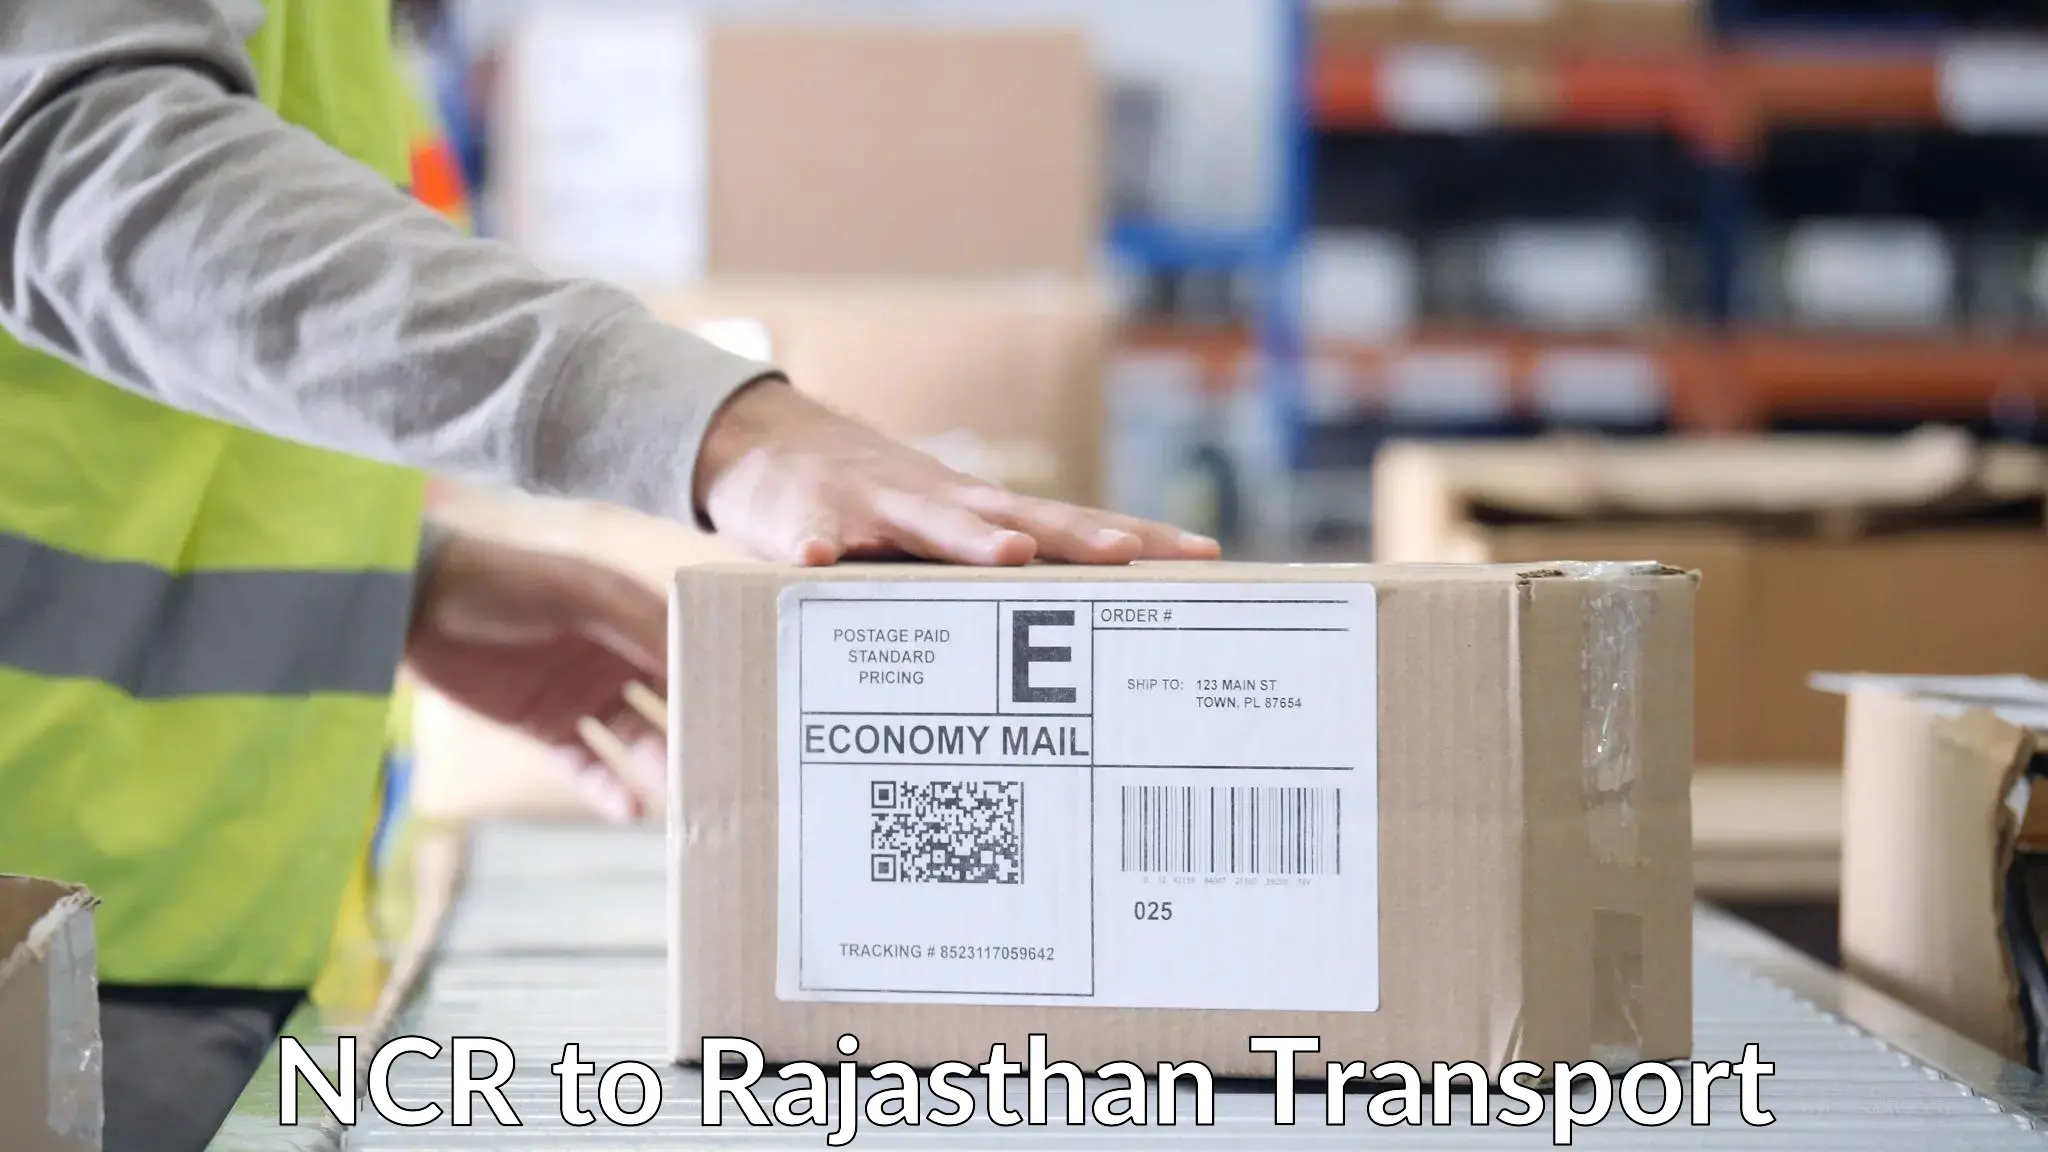 Cargo transportation services NCR to Sultana